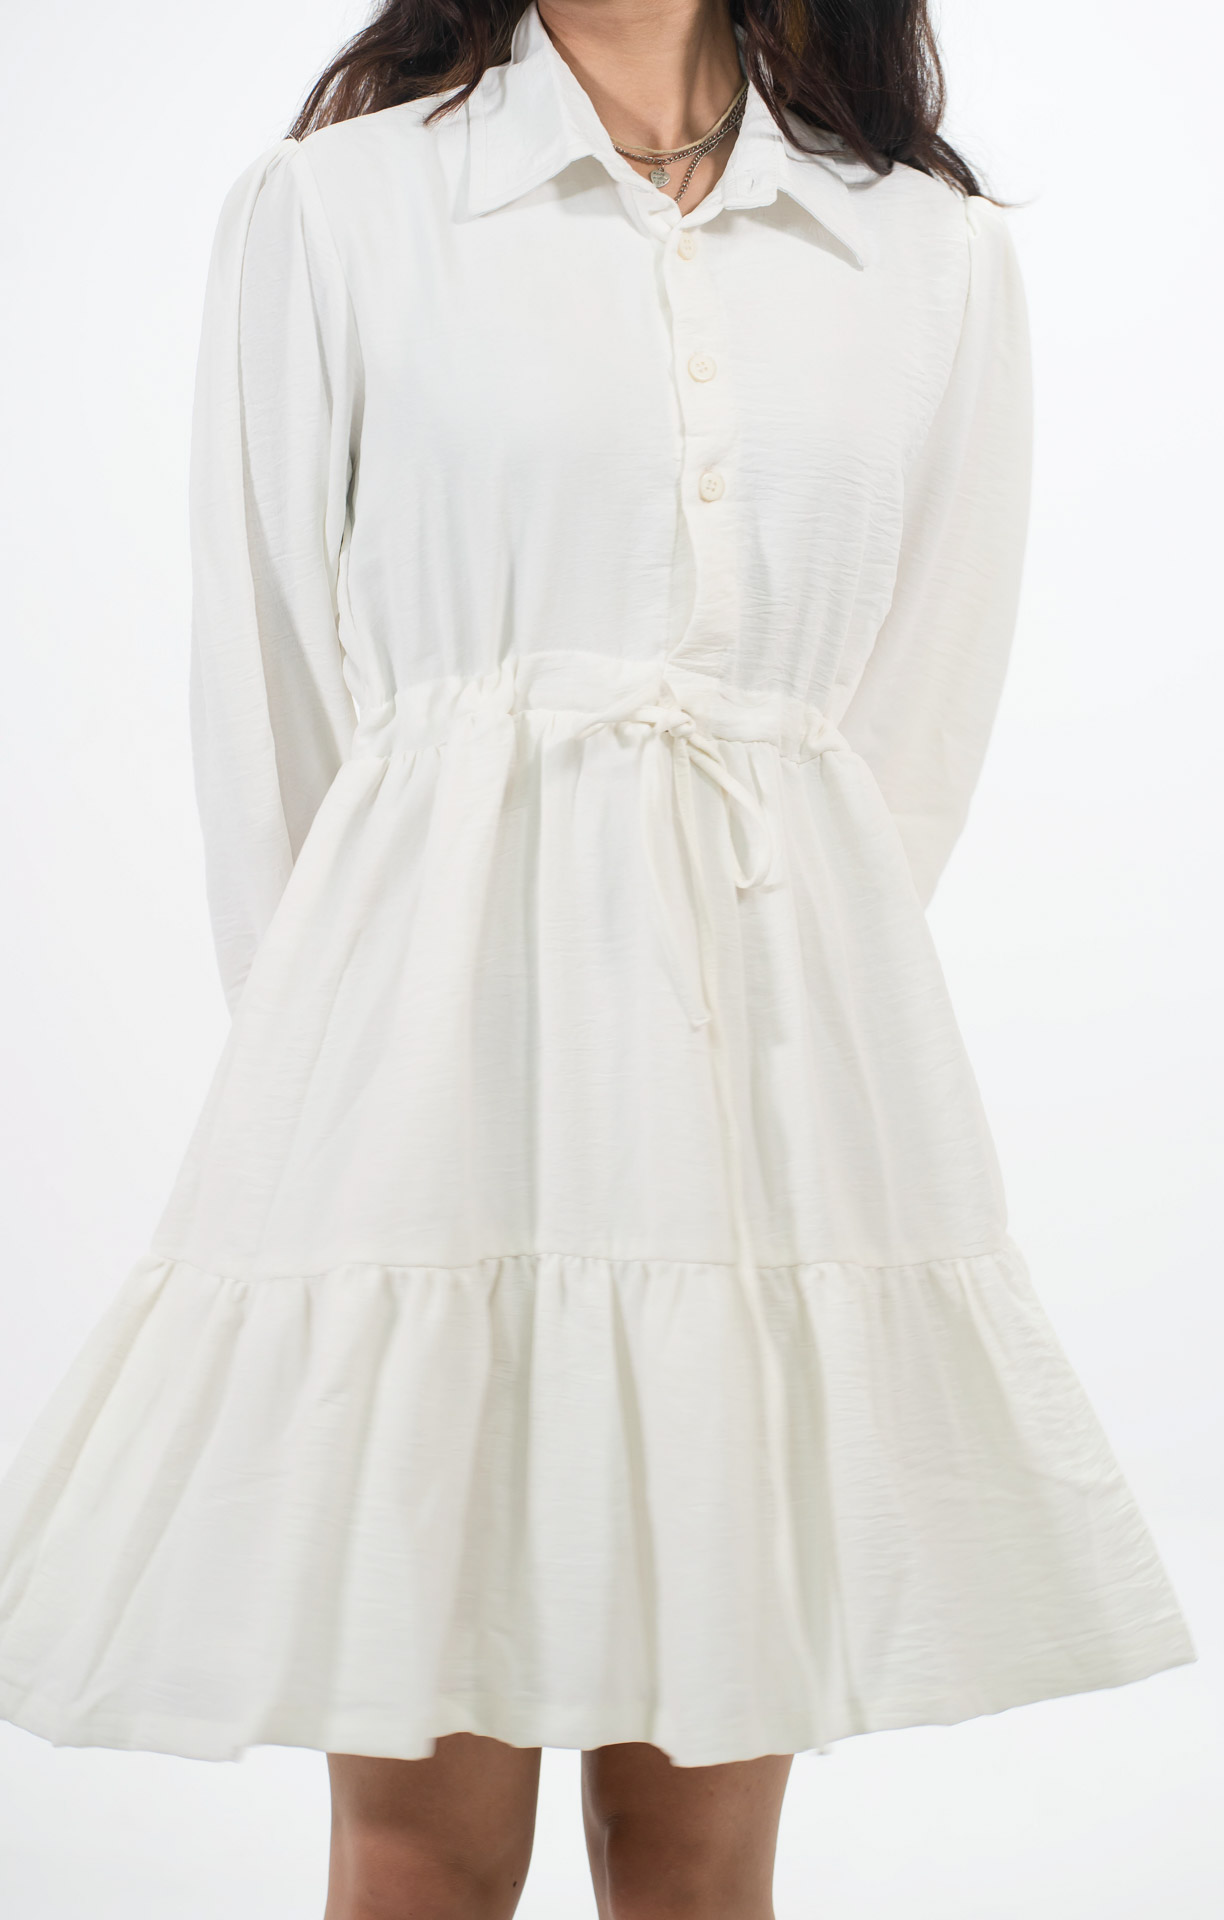 Reverie White Dress